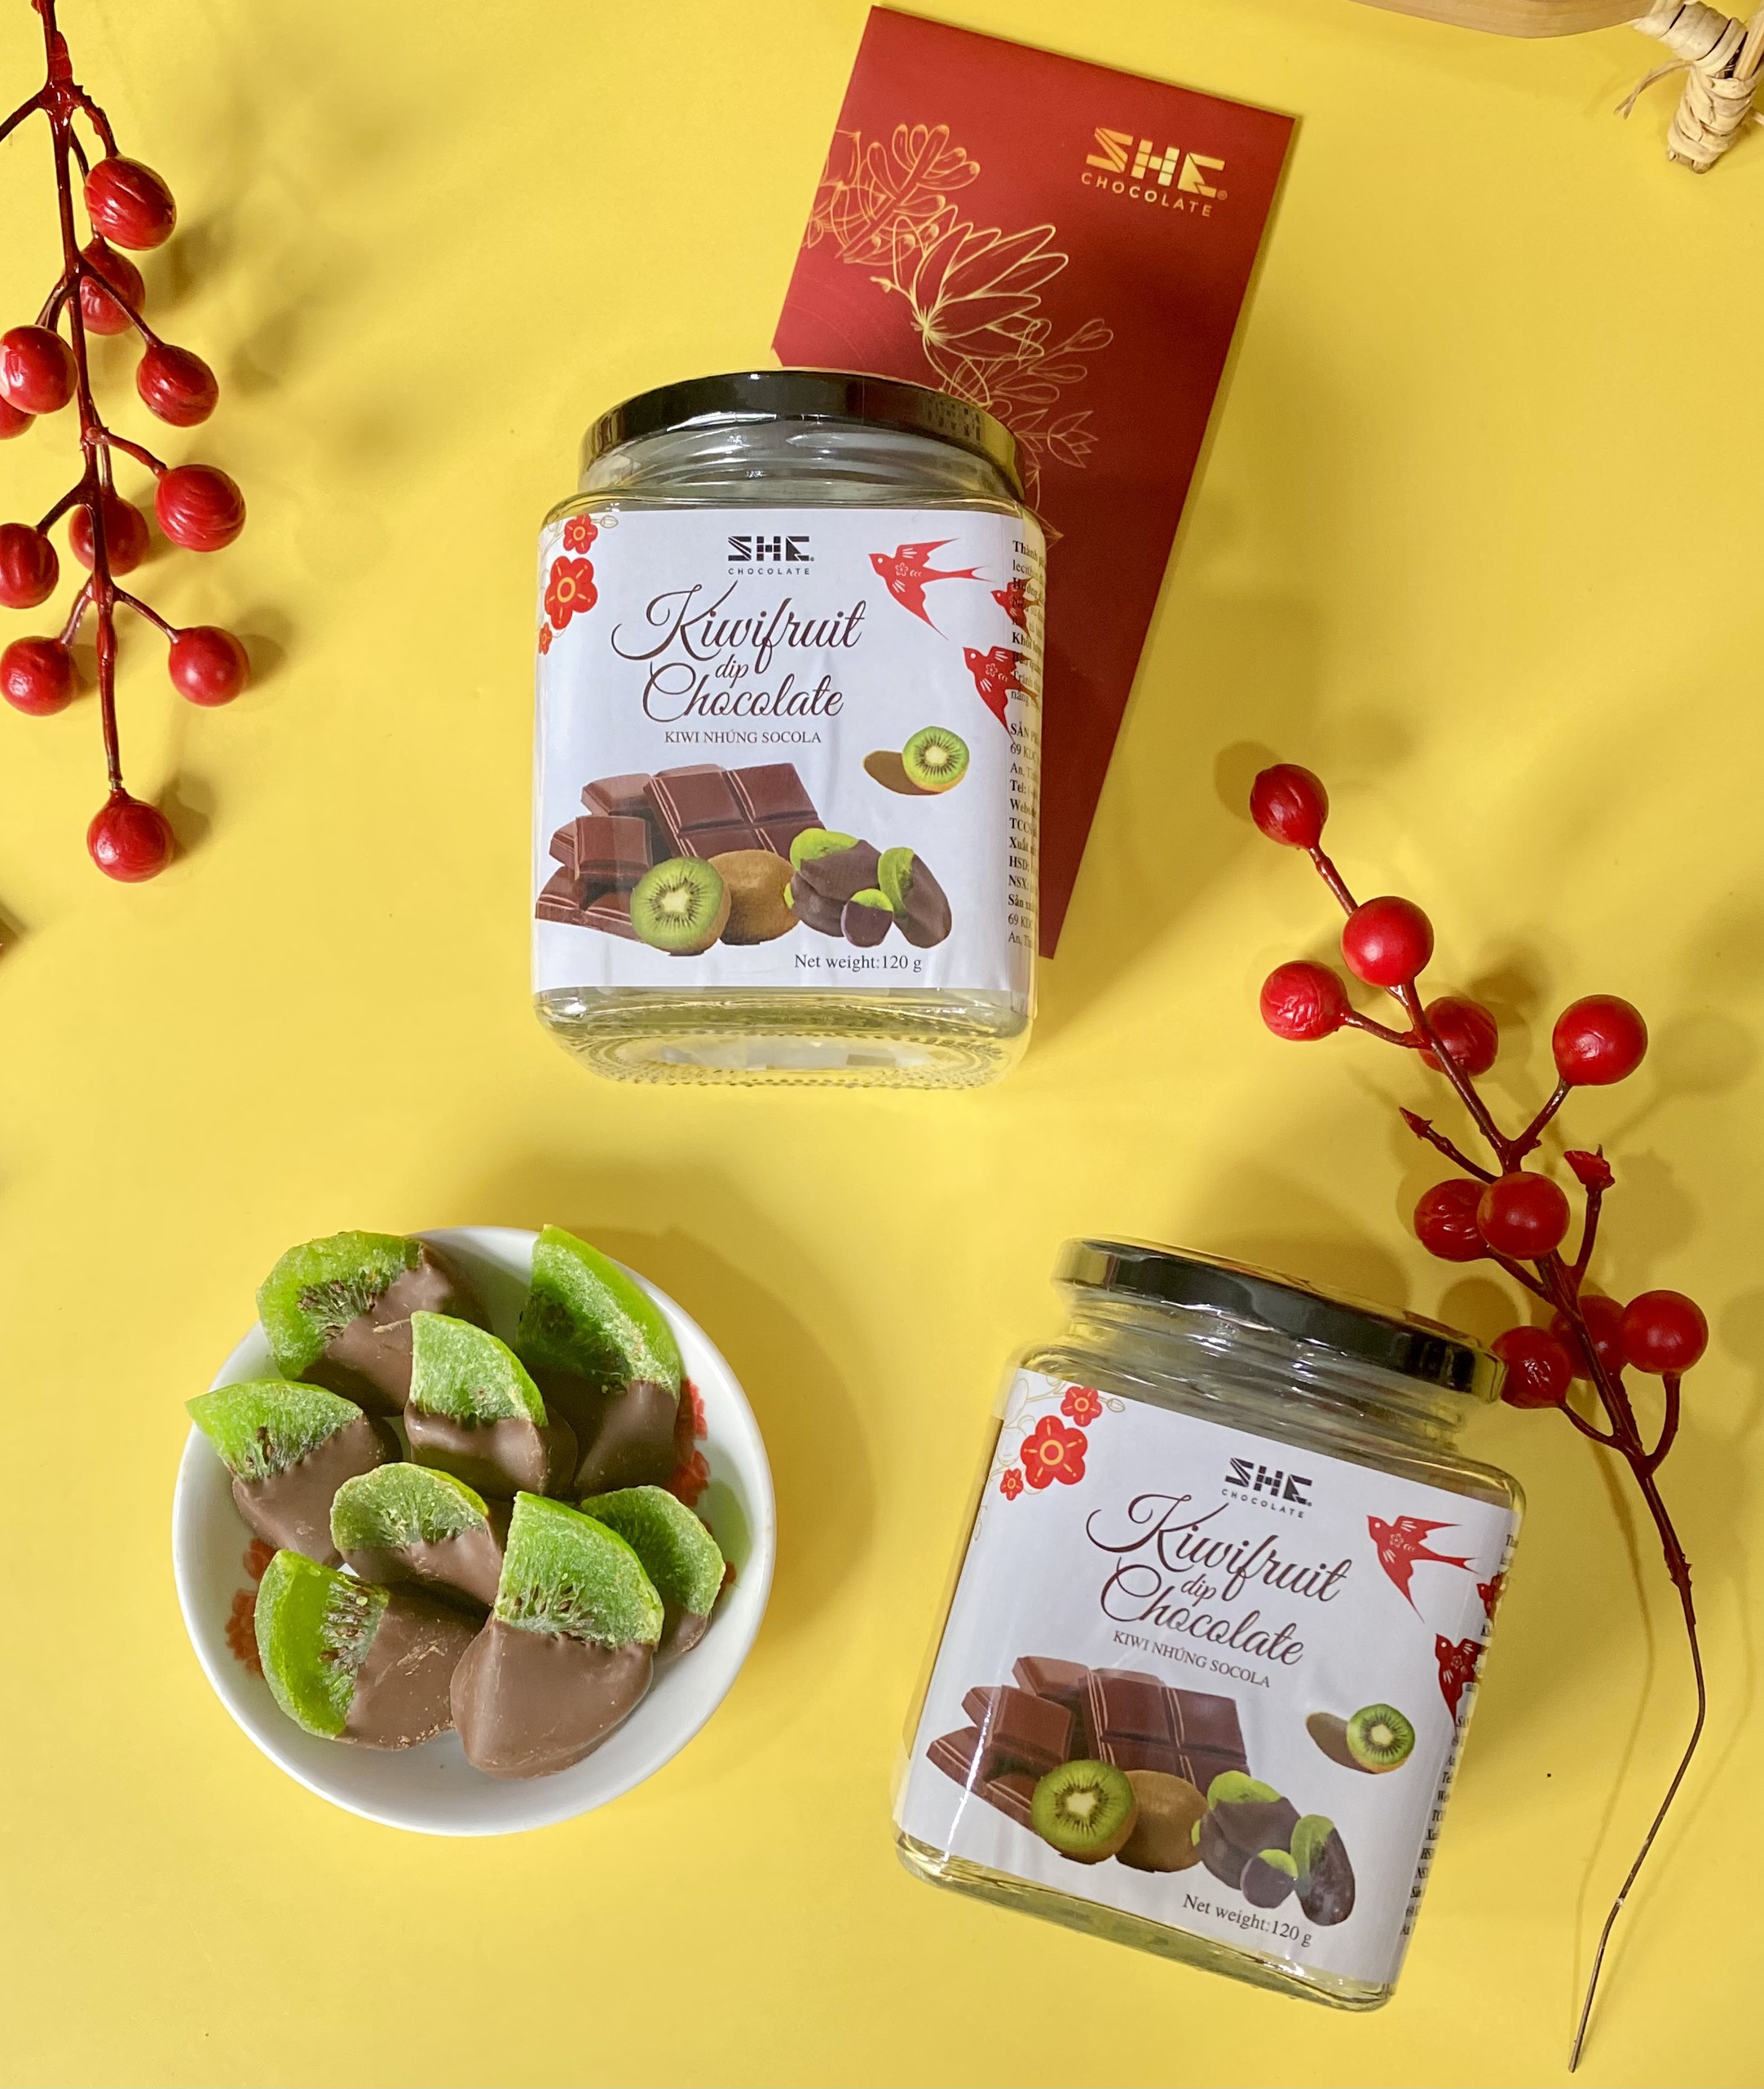 Kiwi nhúng socola - Hũ thủy tinh 120g - SHE Chocolate - Bổ sung năng lượng, đa dạng vị giác. Quà tặng sức khỏe, quà tặng người thân, dịp lễ, thích hợp ăn vặt